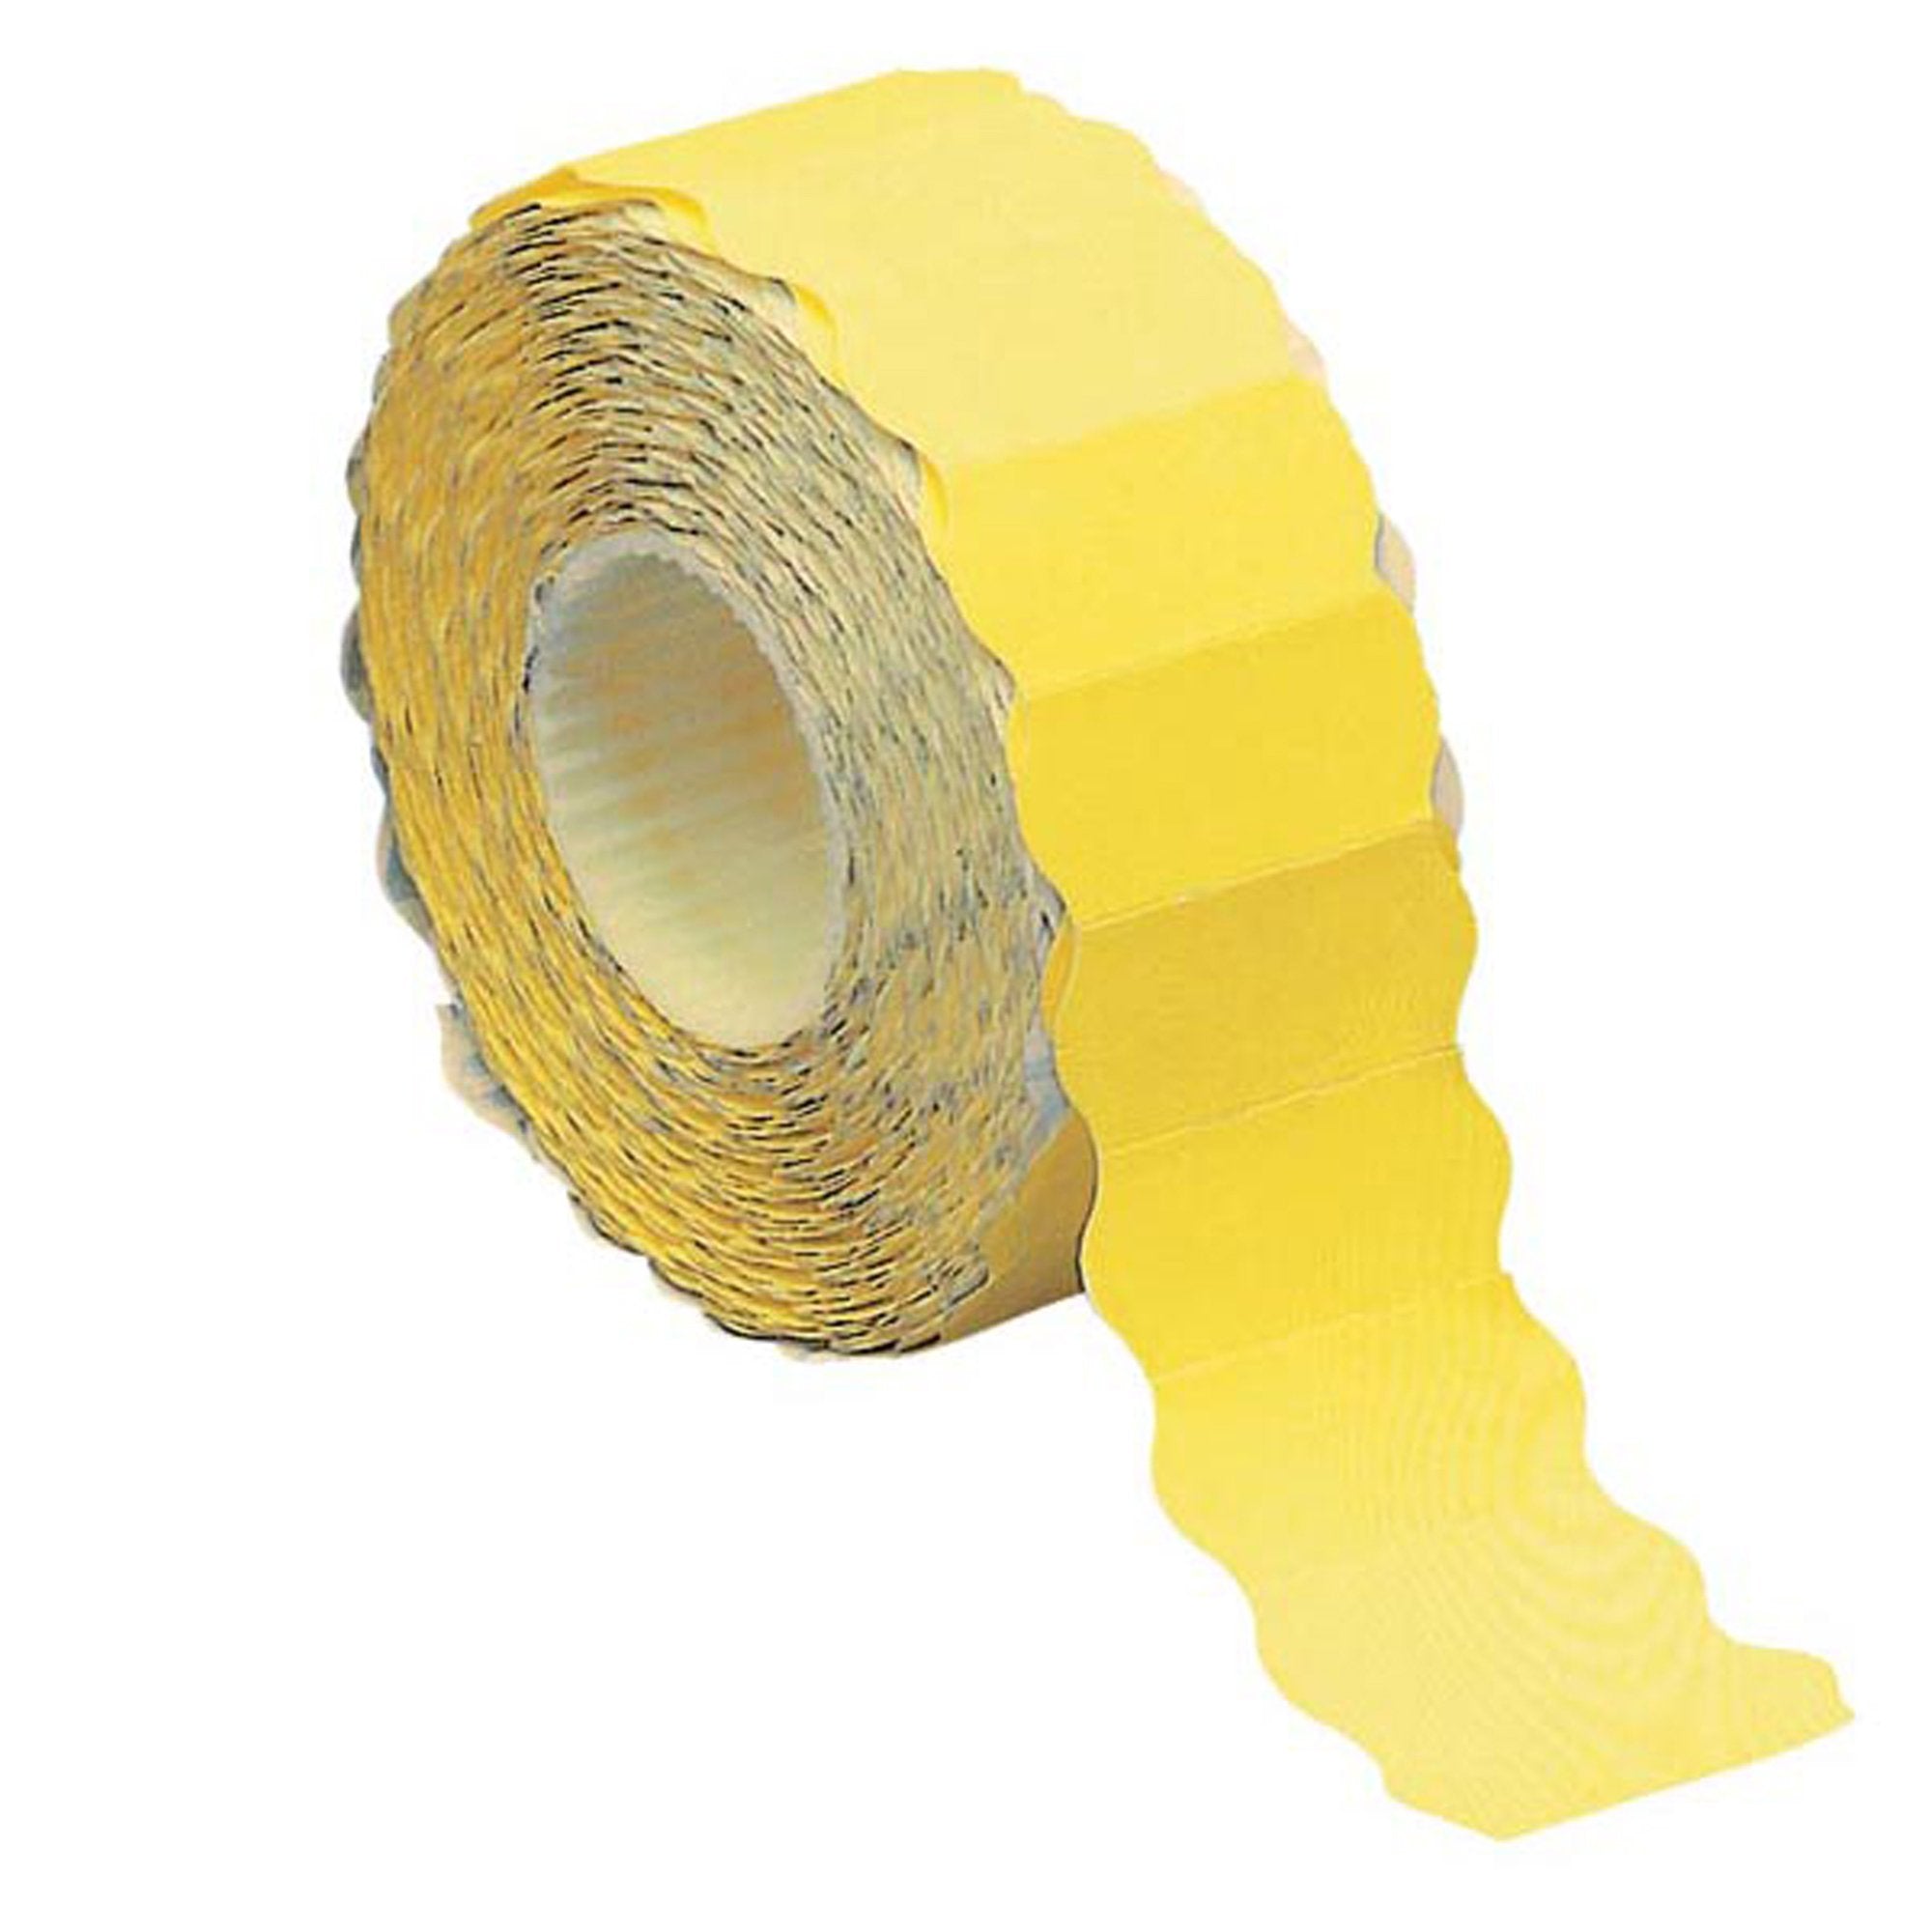 markin-rotolo-1500-etichette-26x12mm-giallo-fluo-permanenti-onda